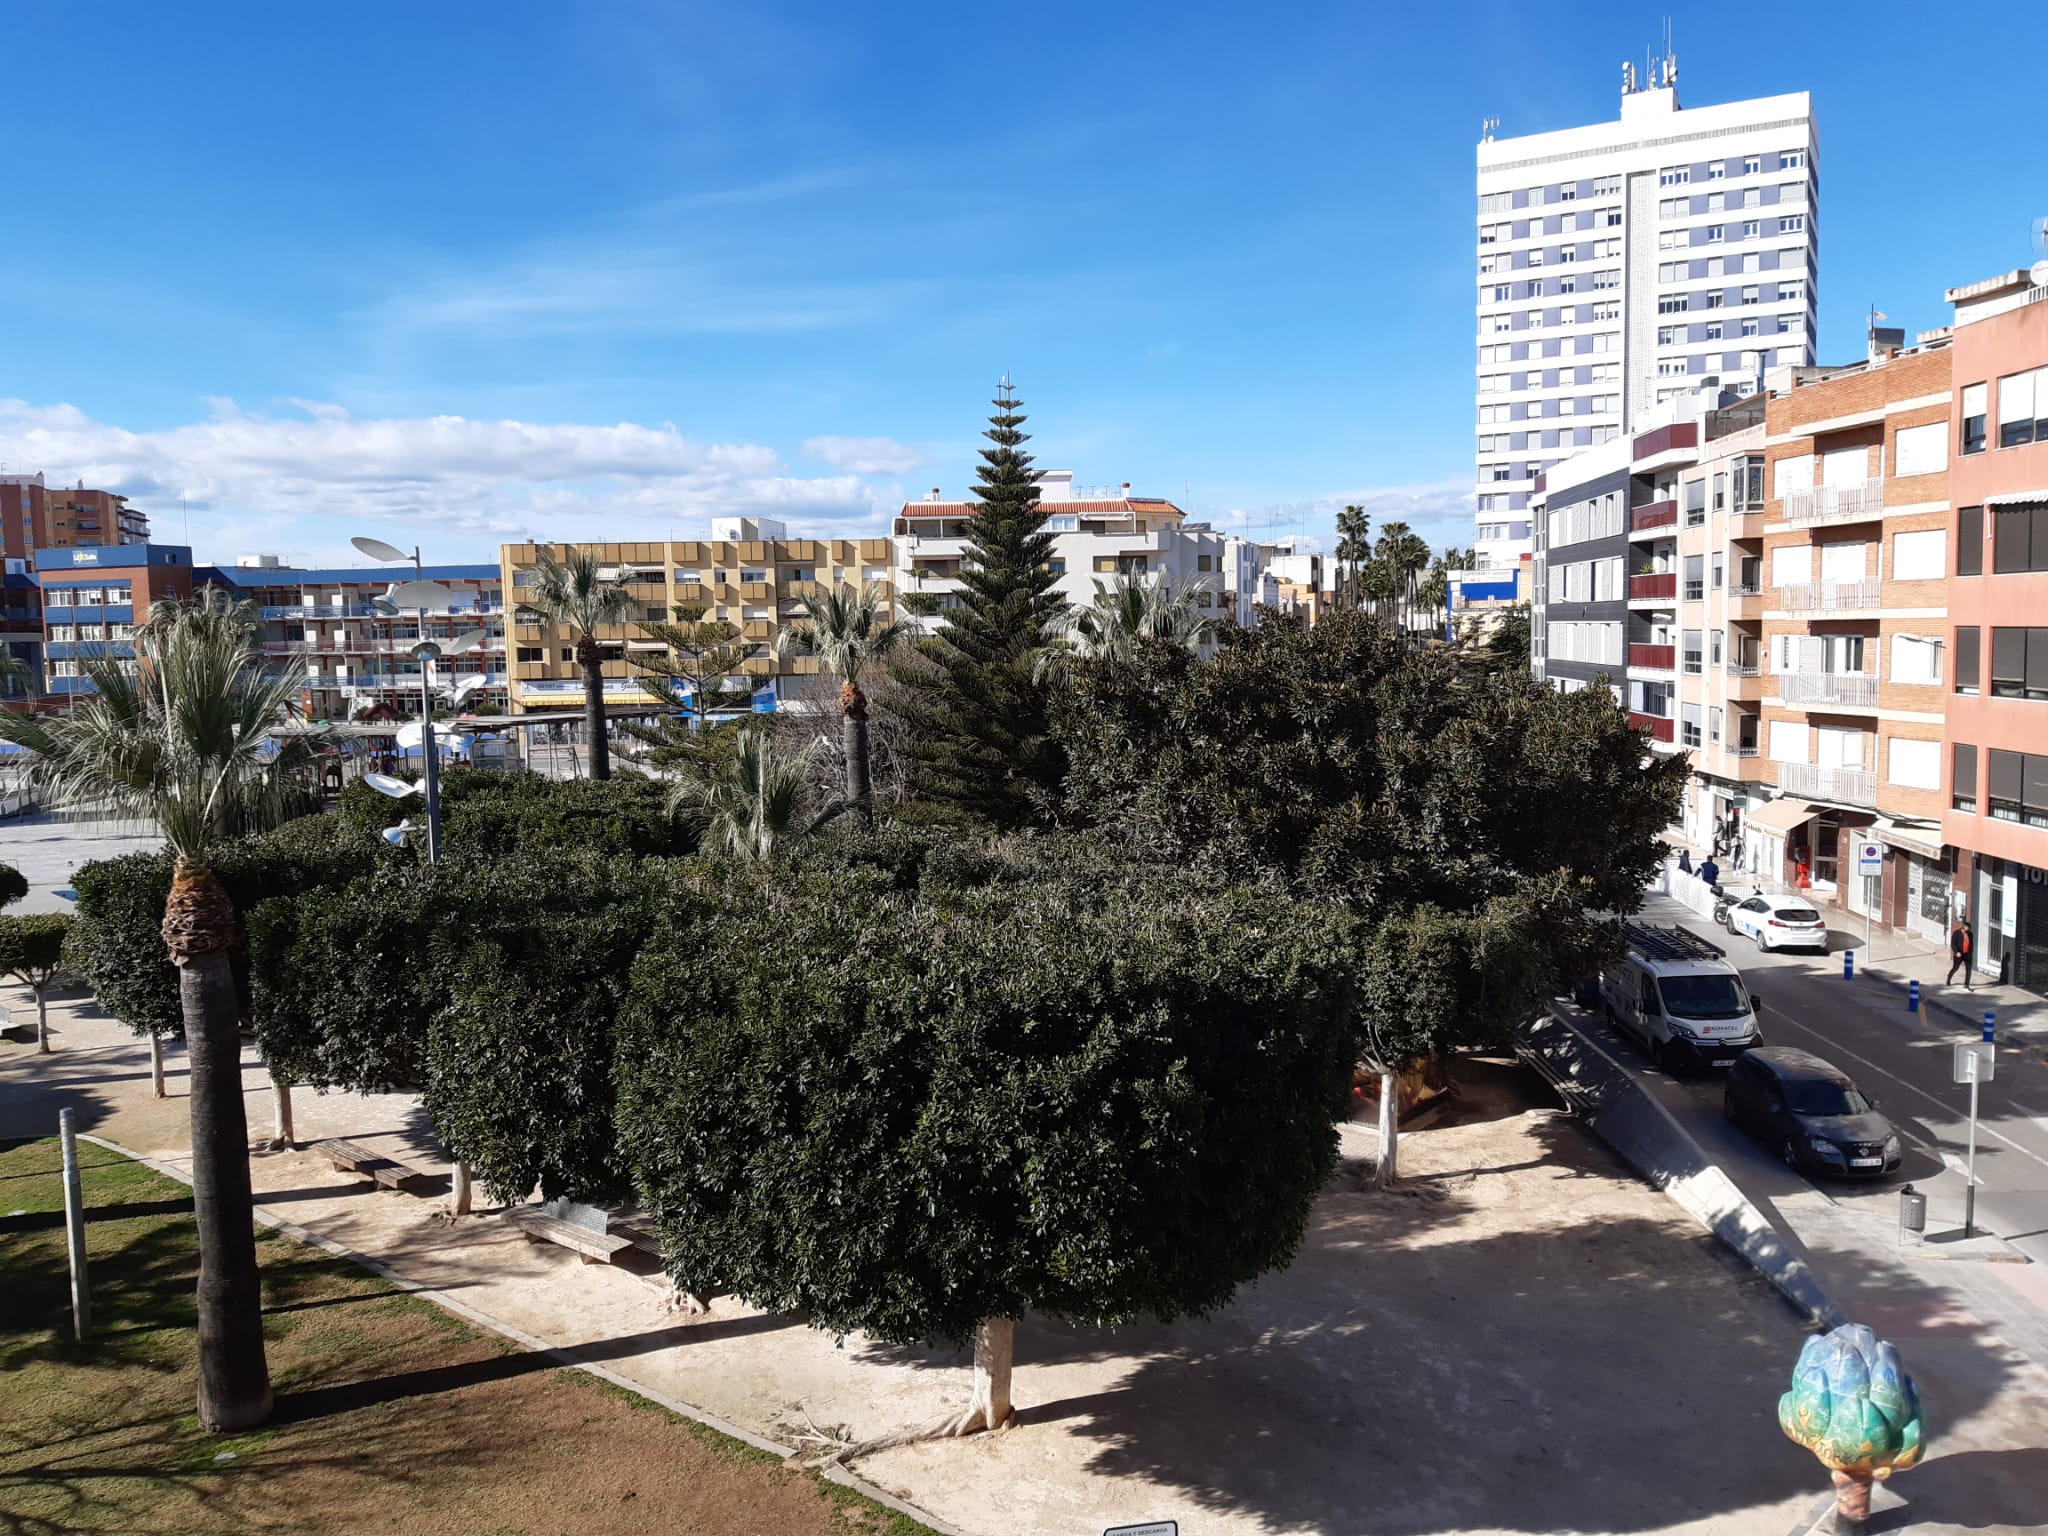 La Generalitat àmplia amb altres 30 nous habitatges el parc públic